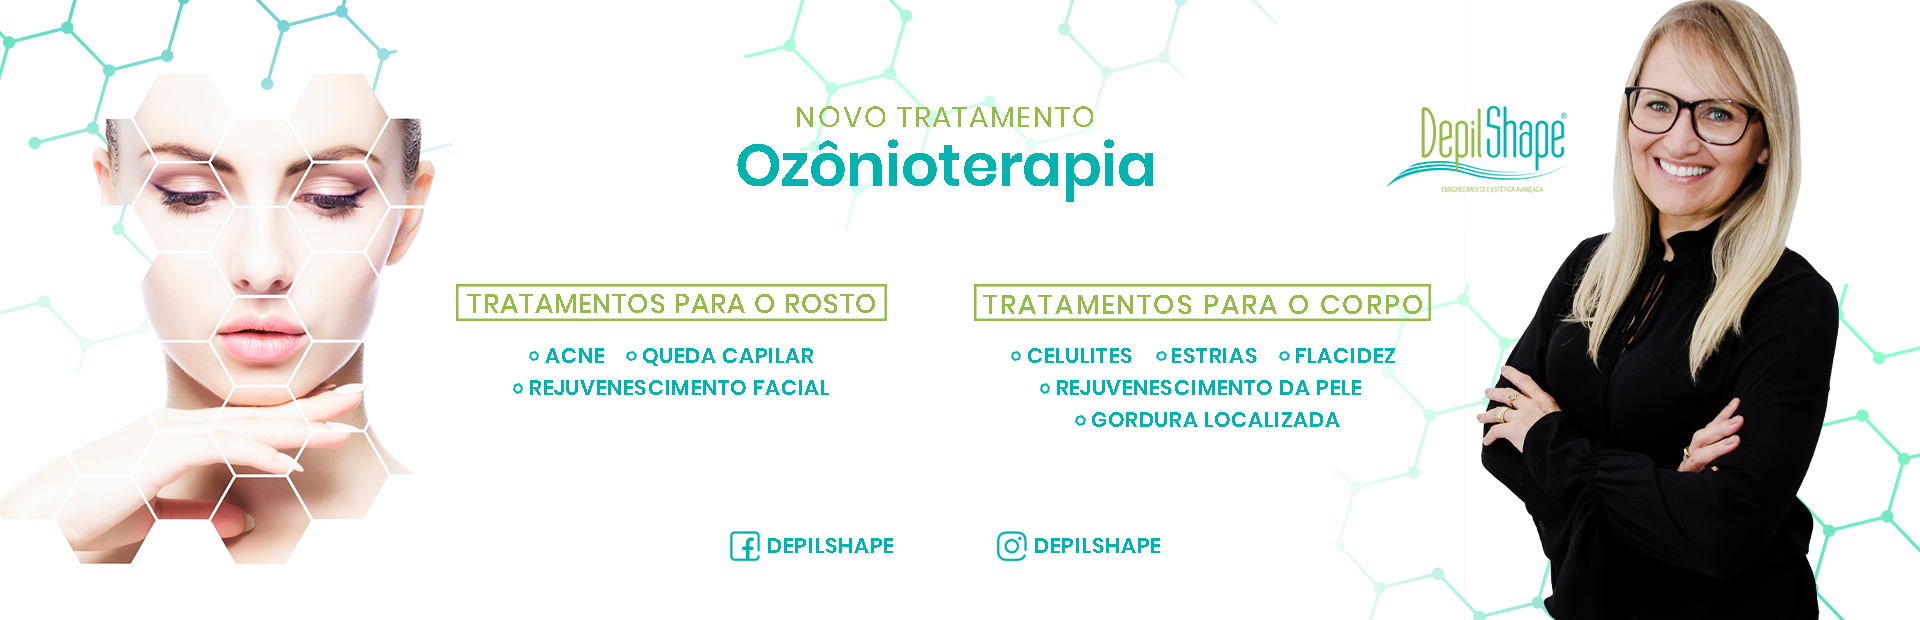 Ozonioterapia